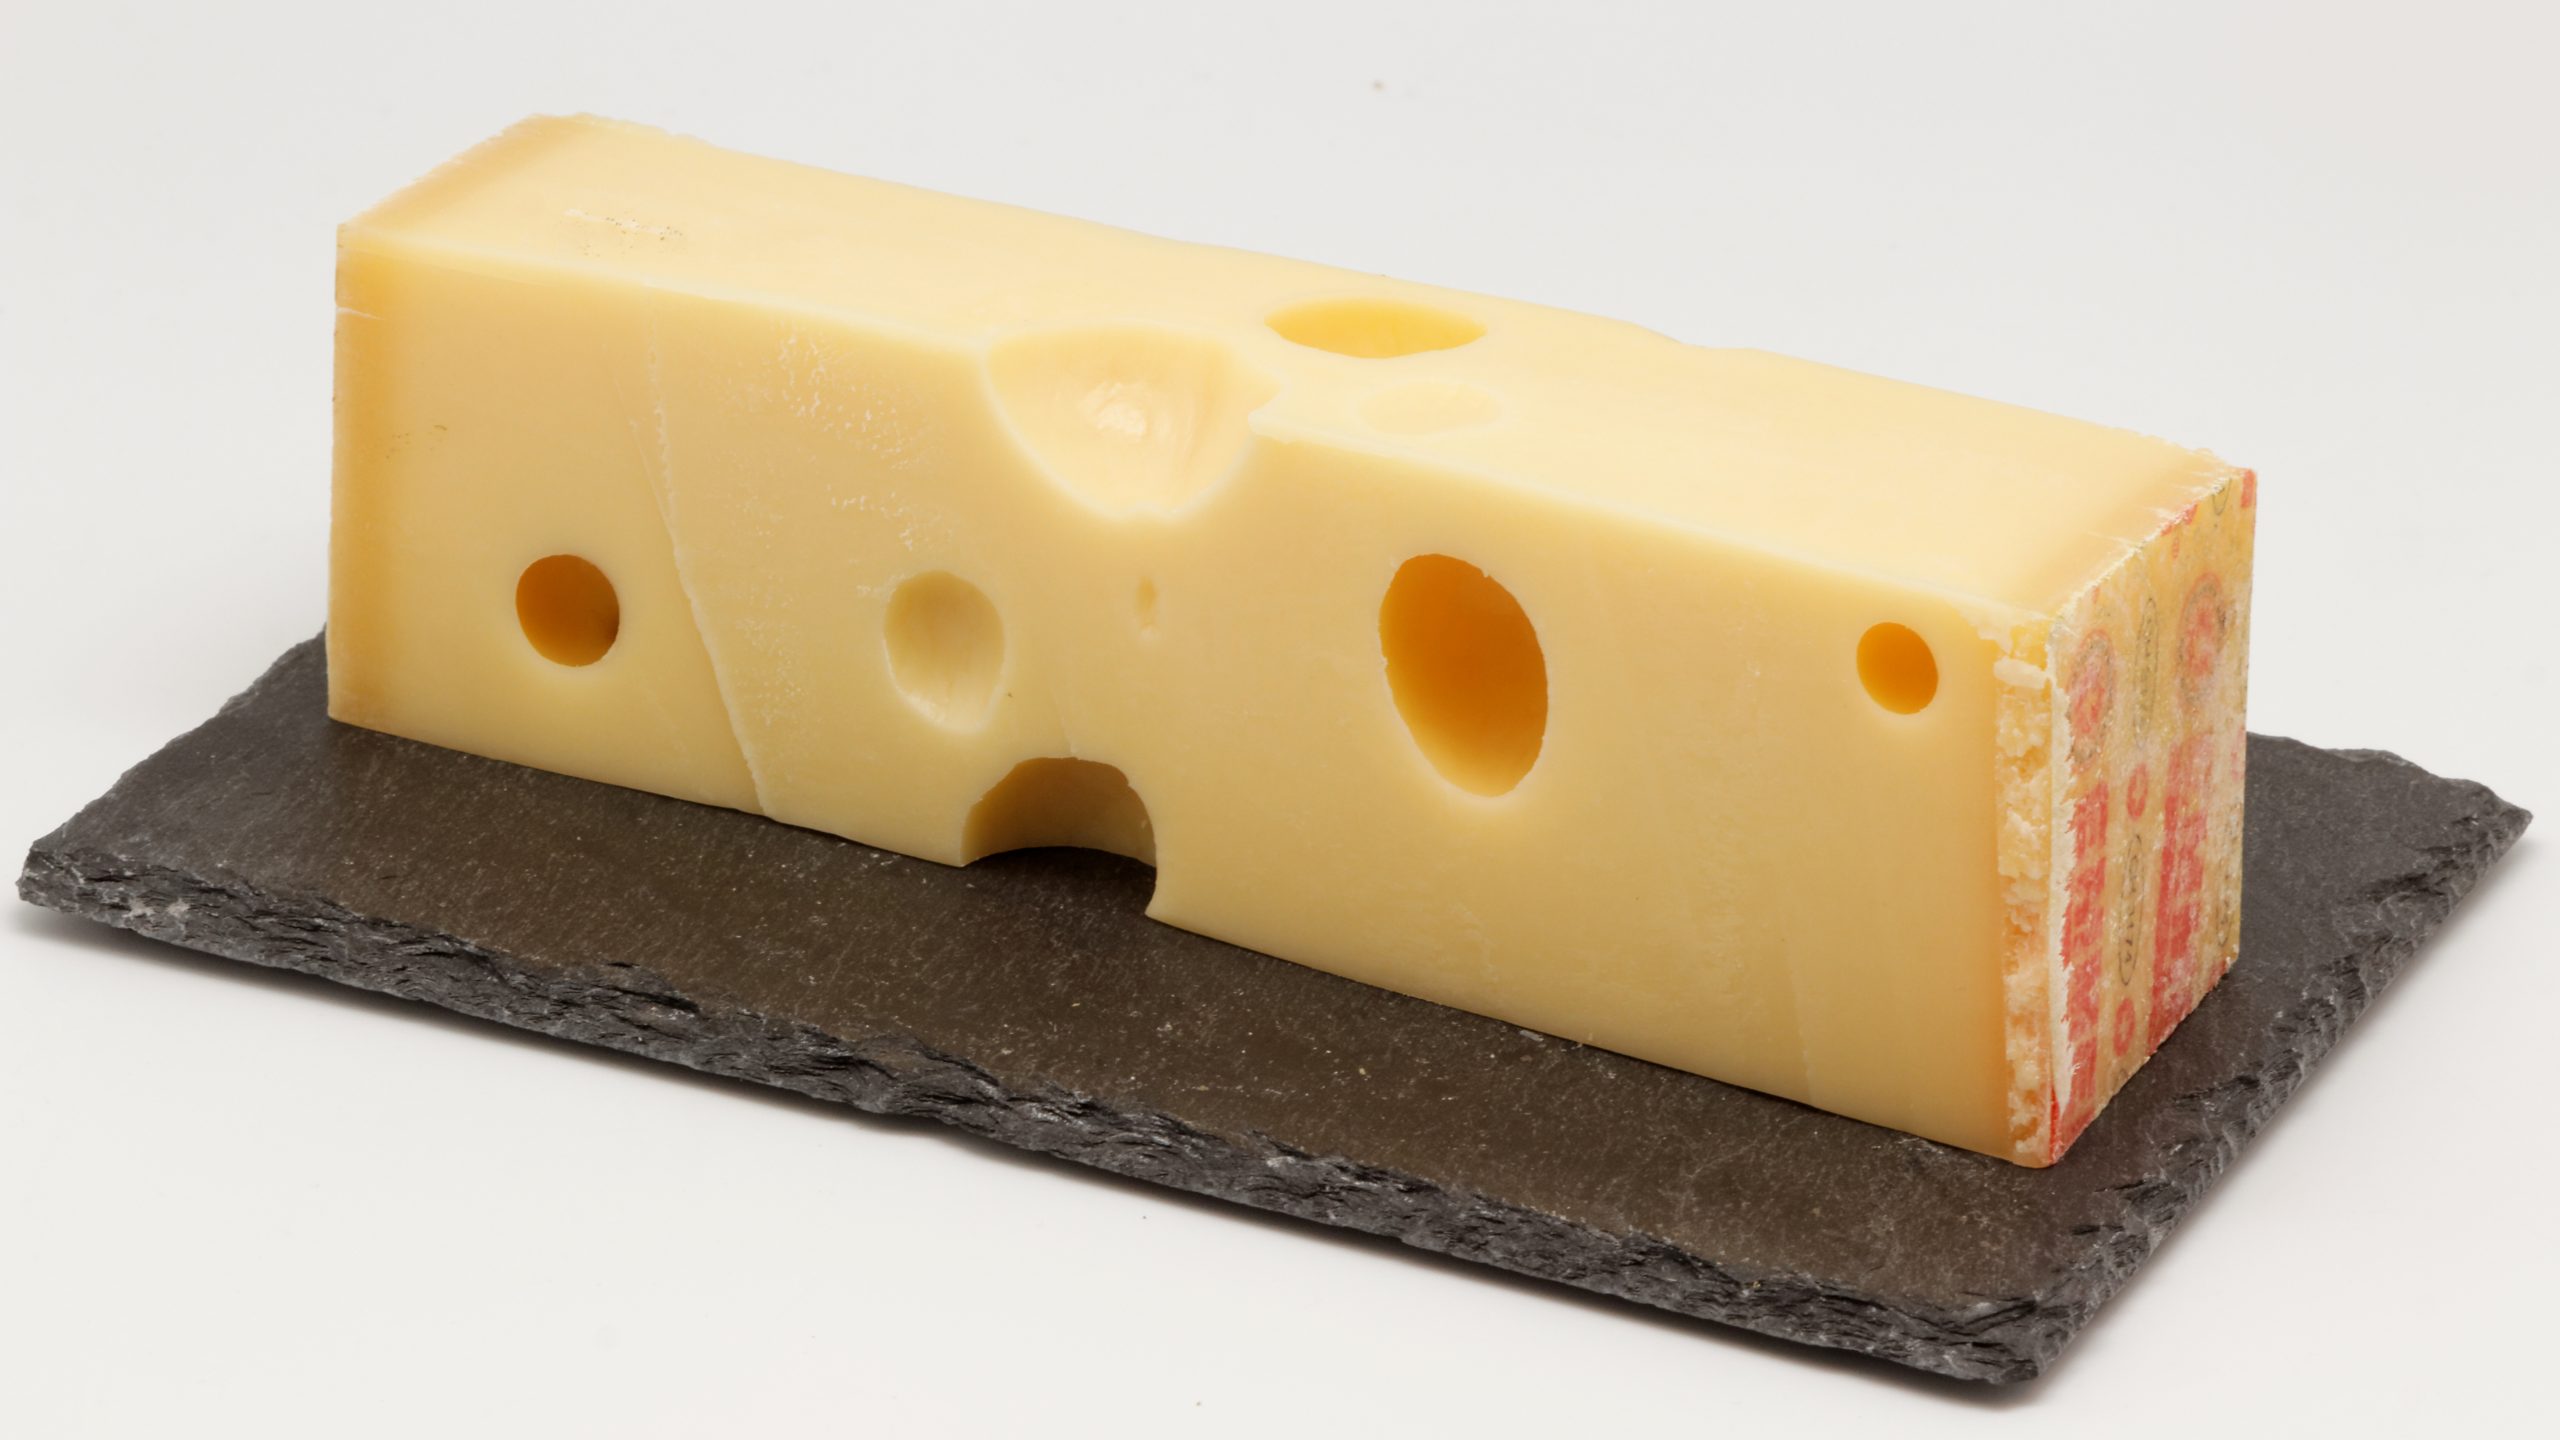 Δείτε πως δημιουργούνται οι χαρακτηριστικές τρύπες στο τυρί έμενταλ (βίντεο)